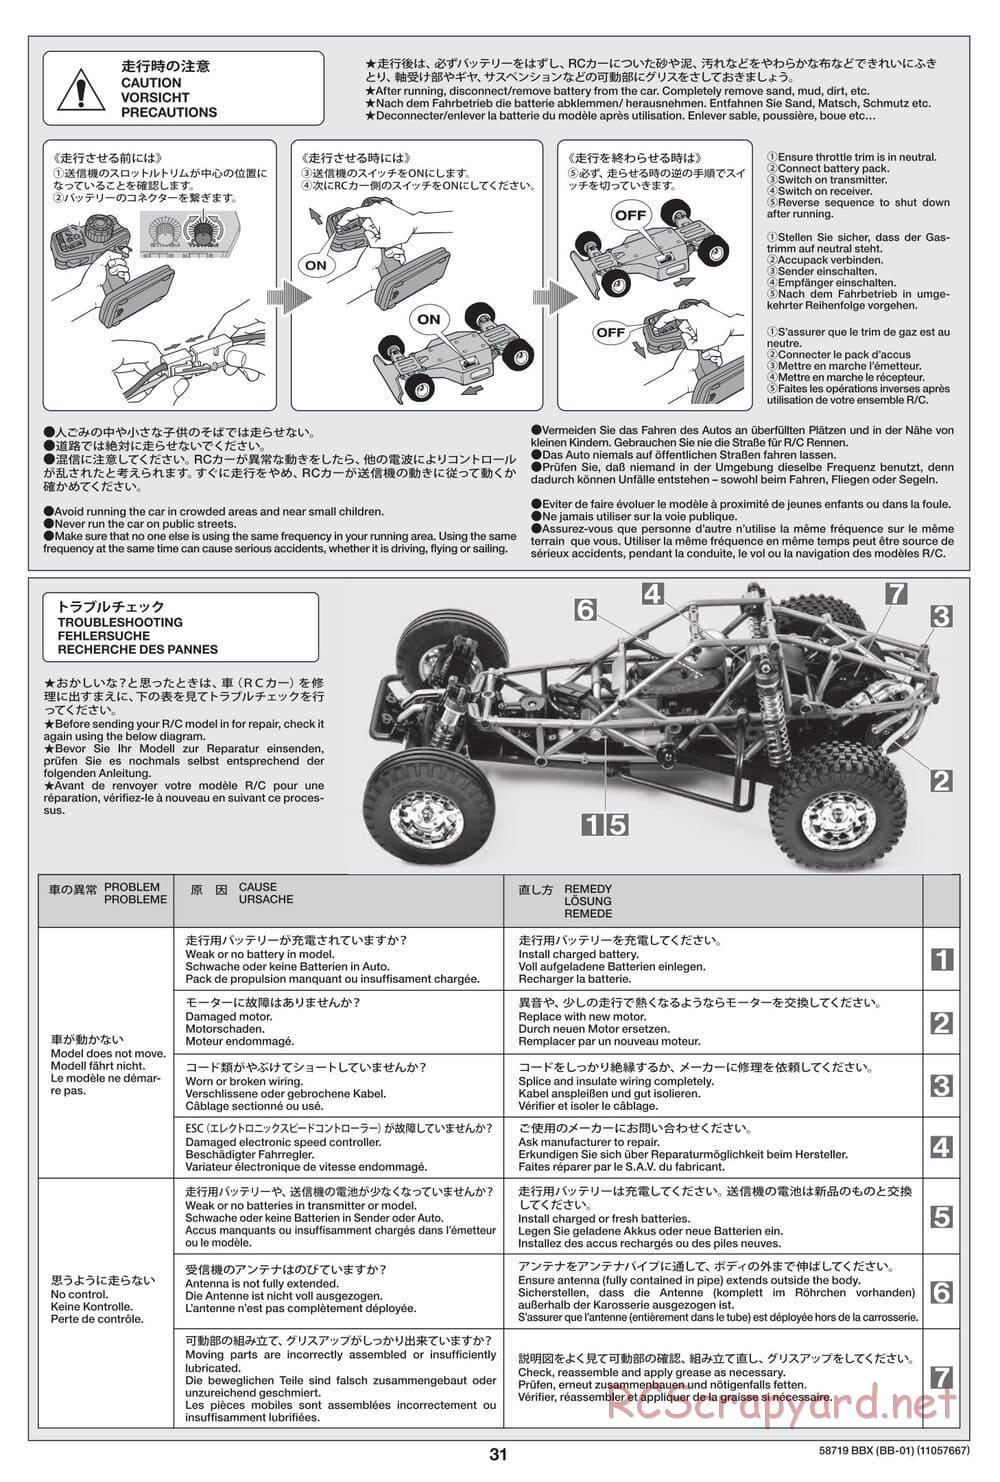 Tamiya - BBX - BB-01 Chassis - Manual - Page 31